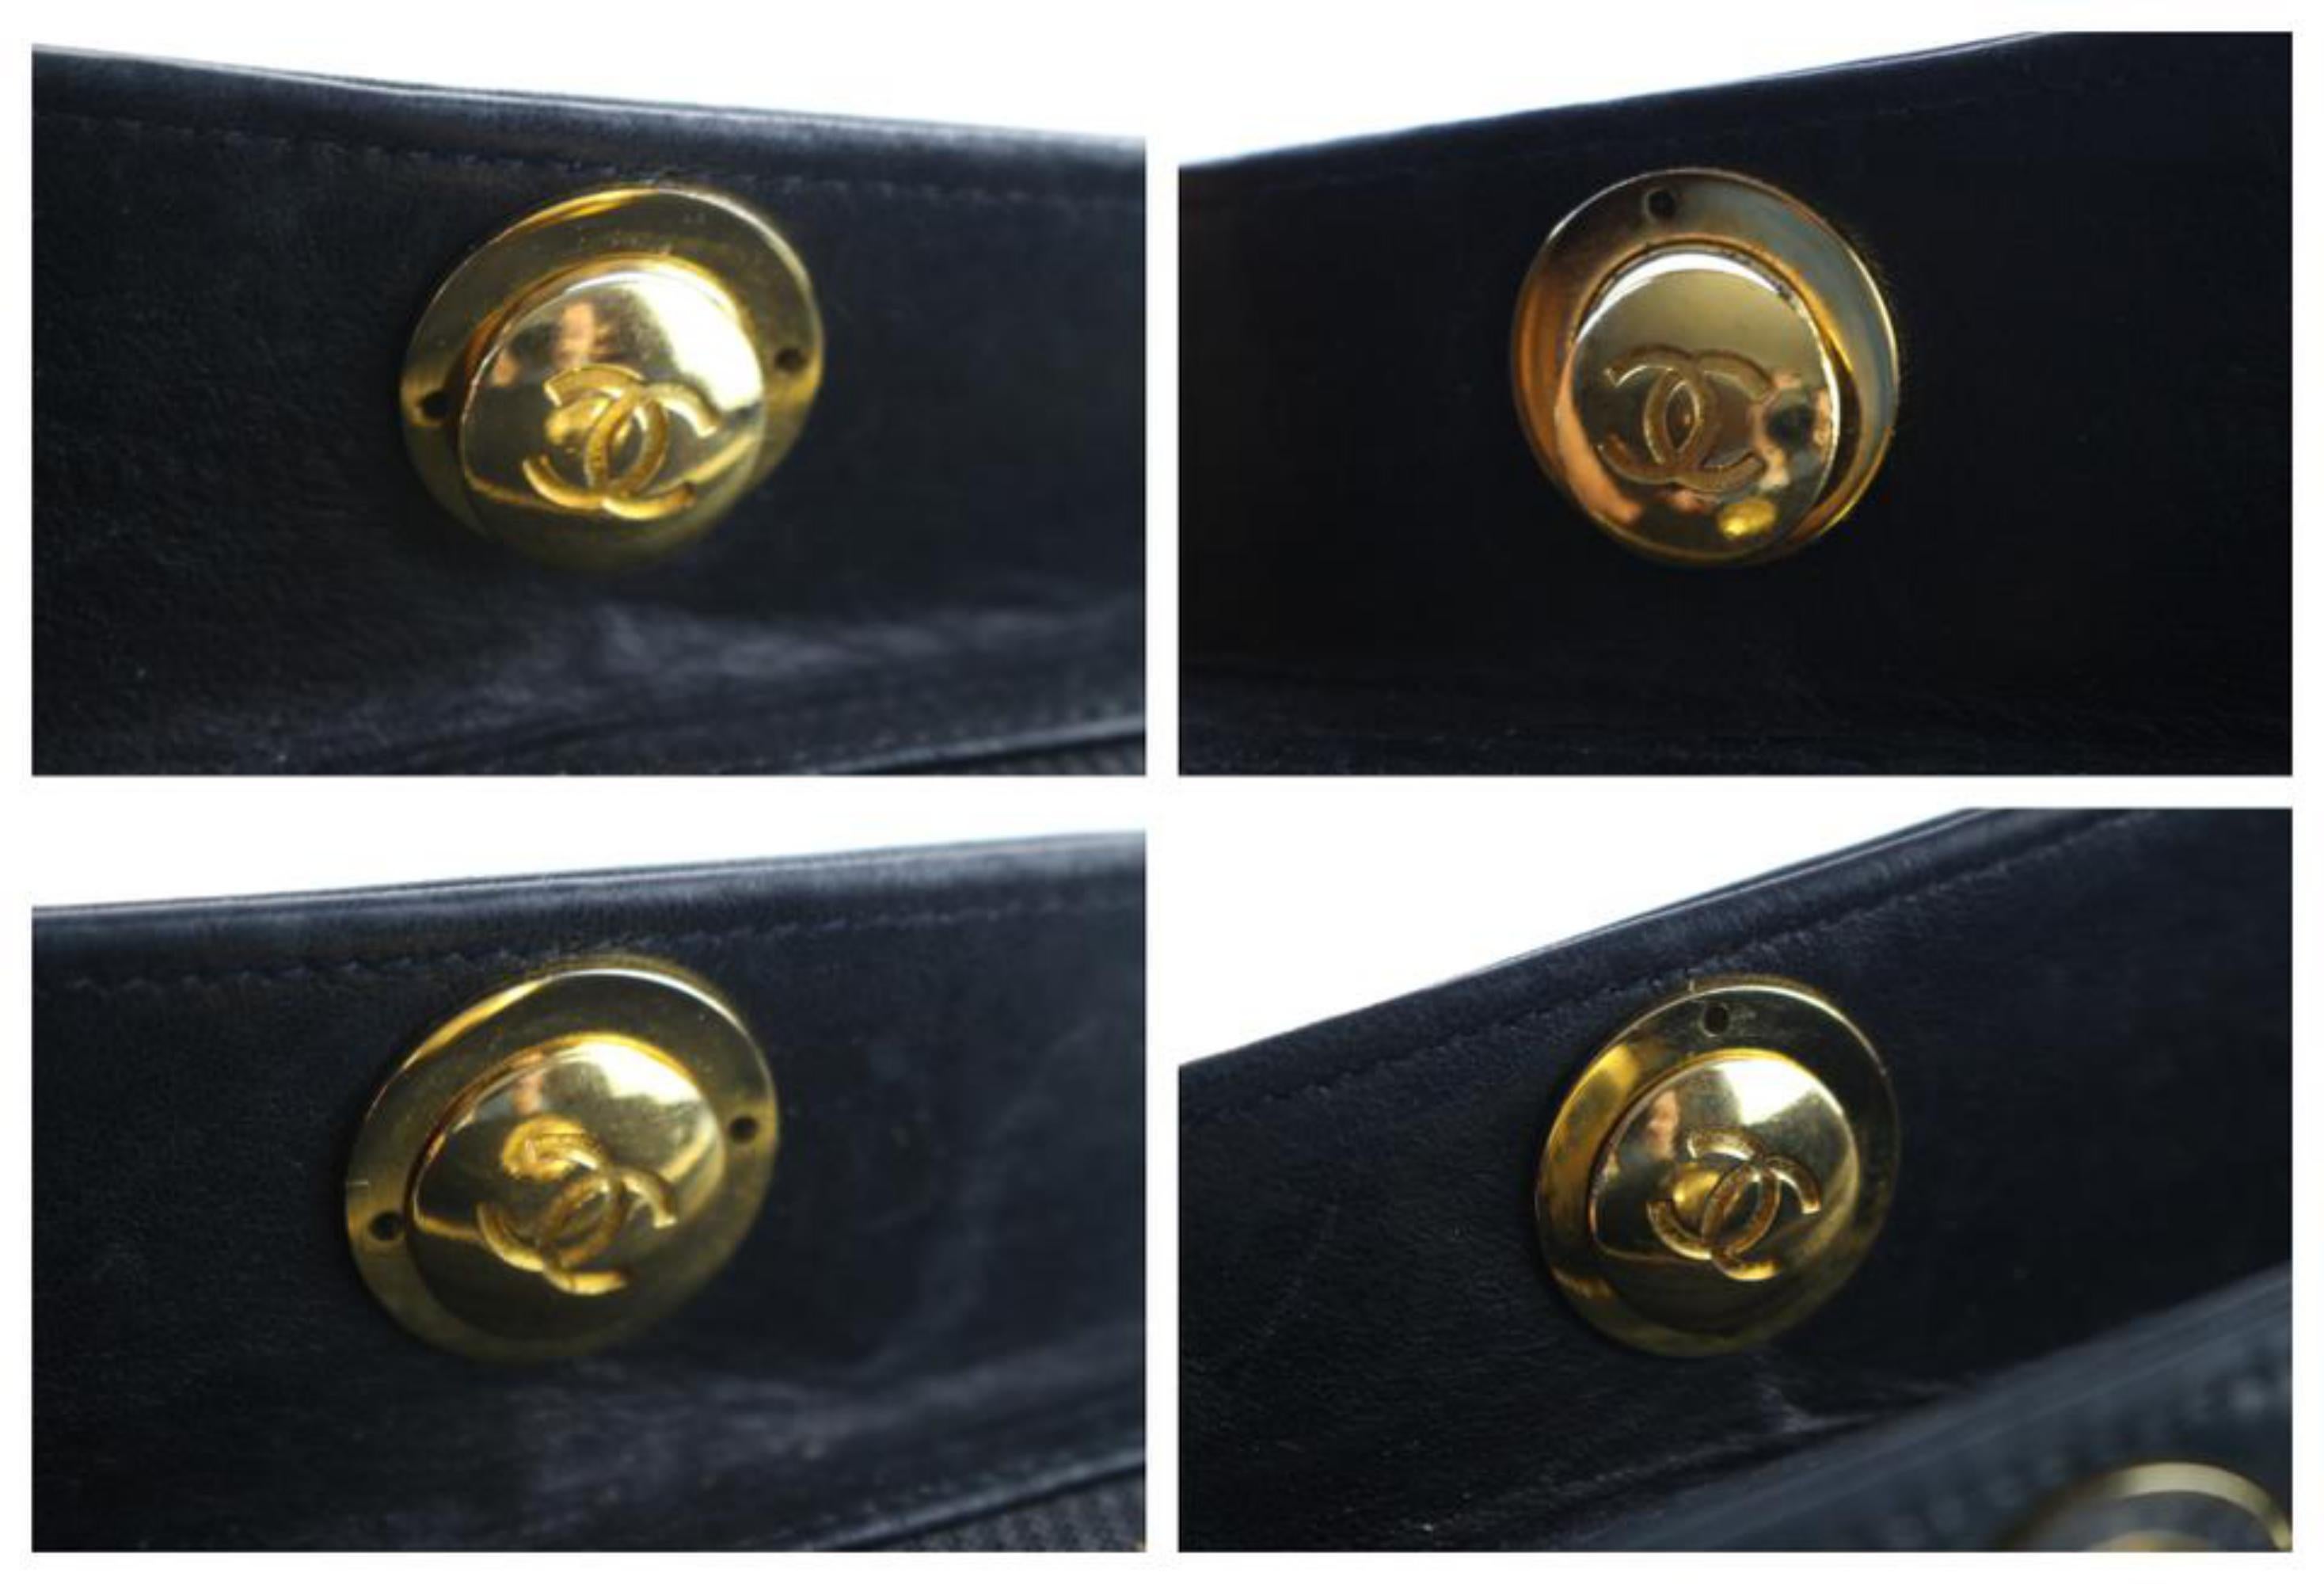 Chanel Medallion Chain Tote 14cr0515 Black Leather Shoulder Bag For Sale 7